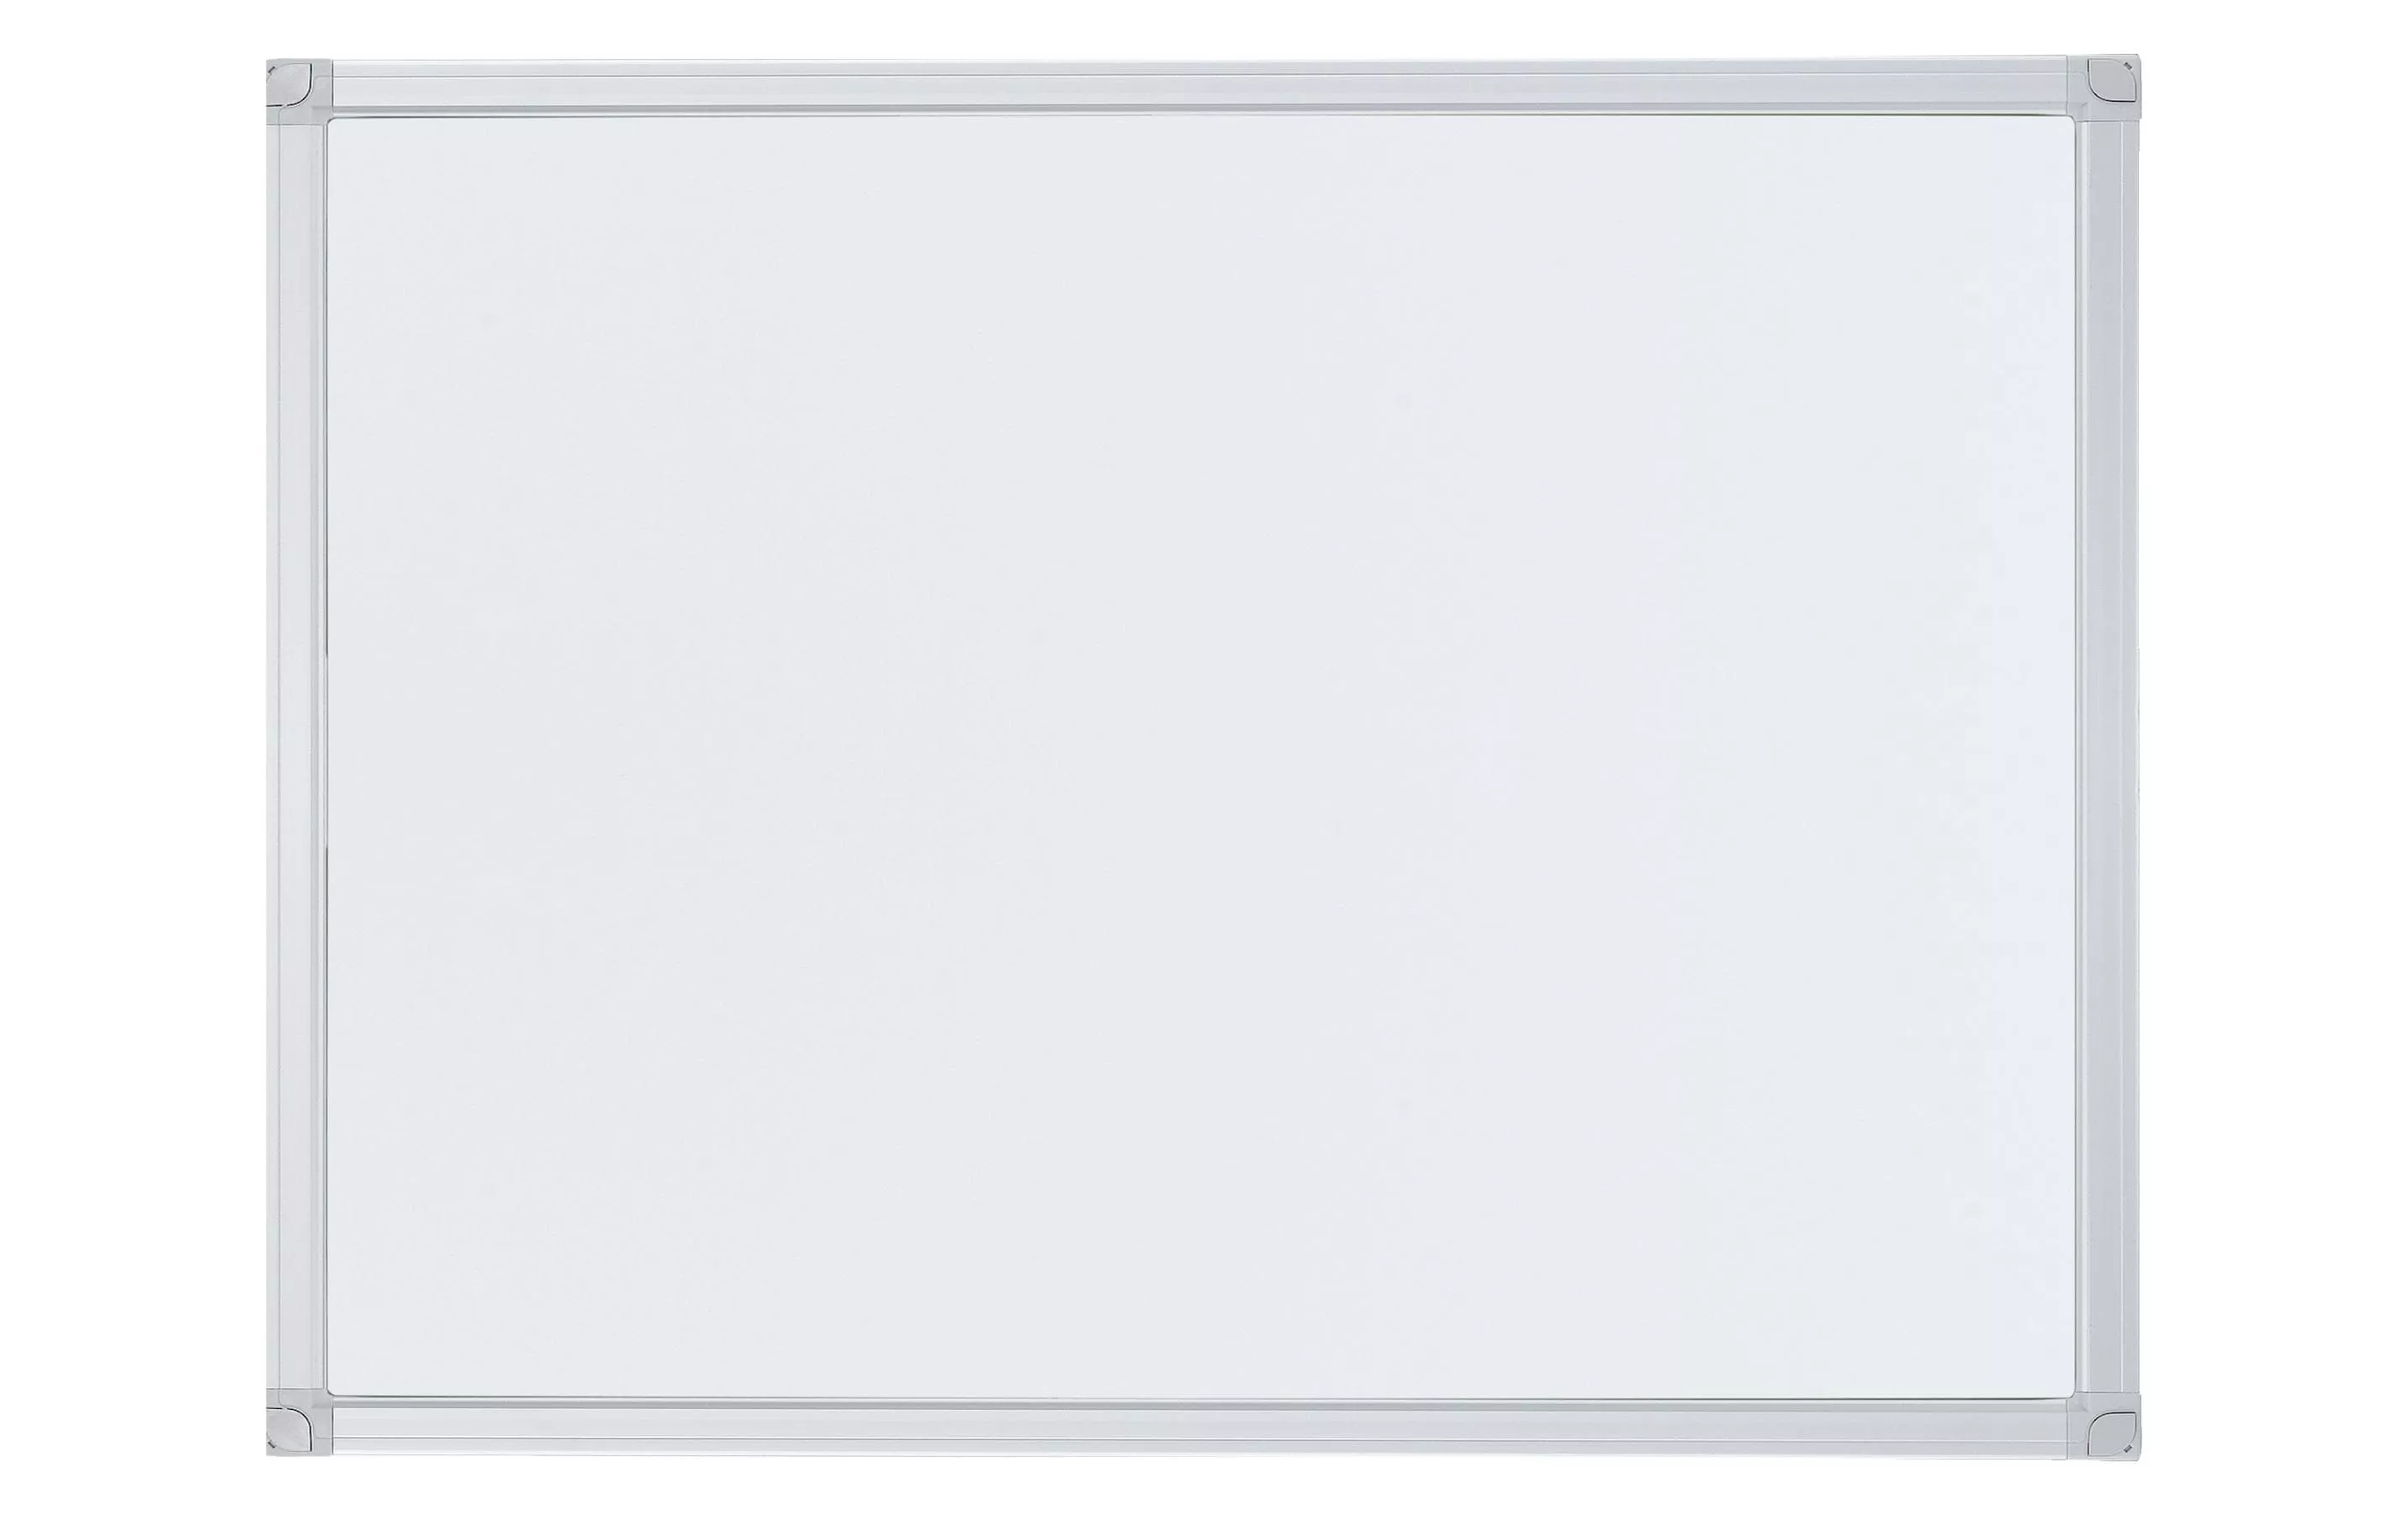 Tableau blanc magnétique X-tra!Line 90 cm x 120 cm, Blanc